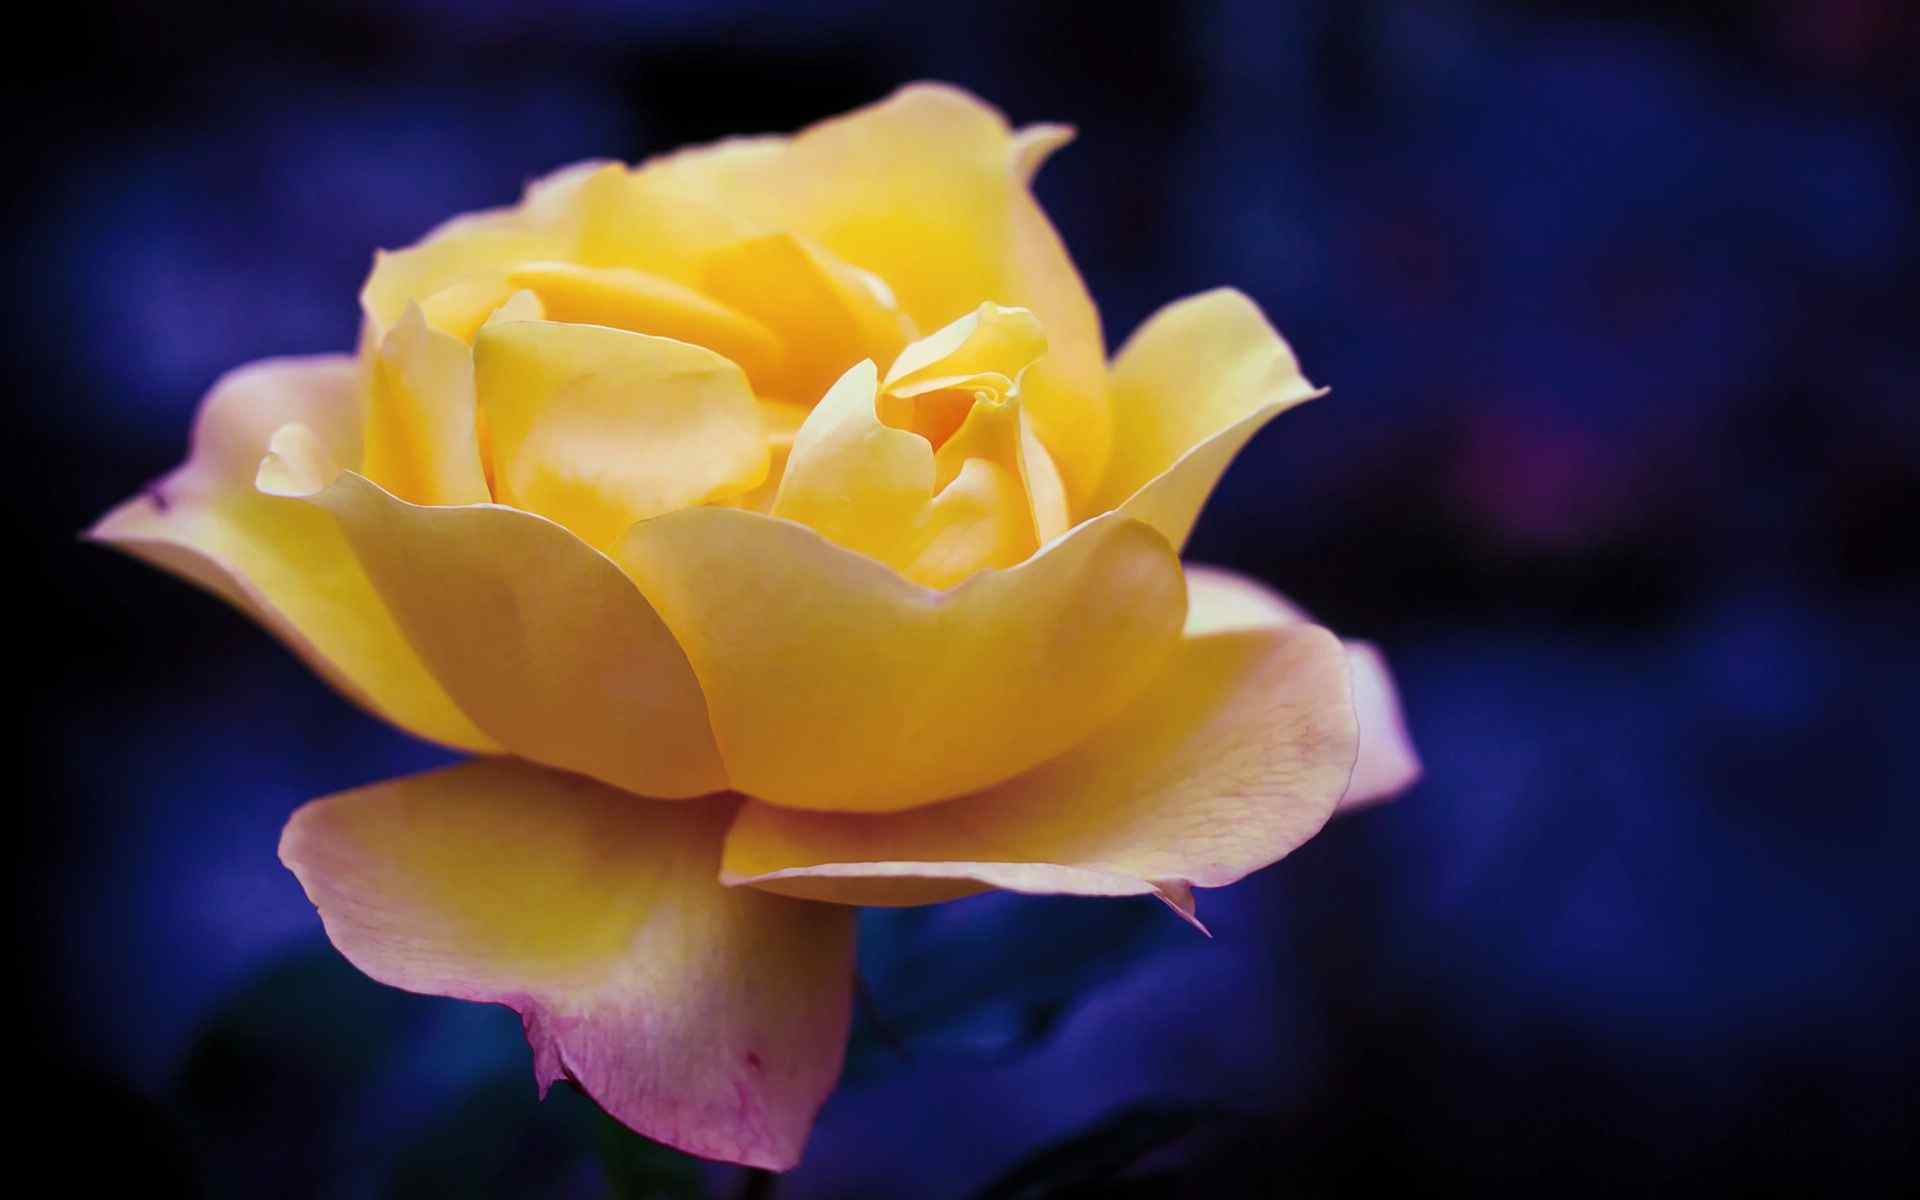 高清黄玫瑰桌面壁纸图片